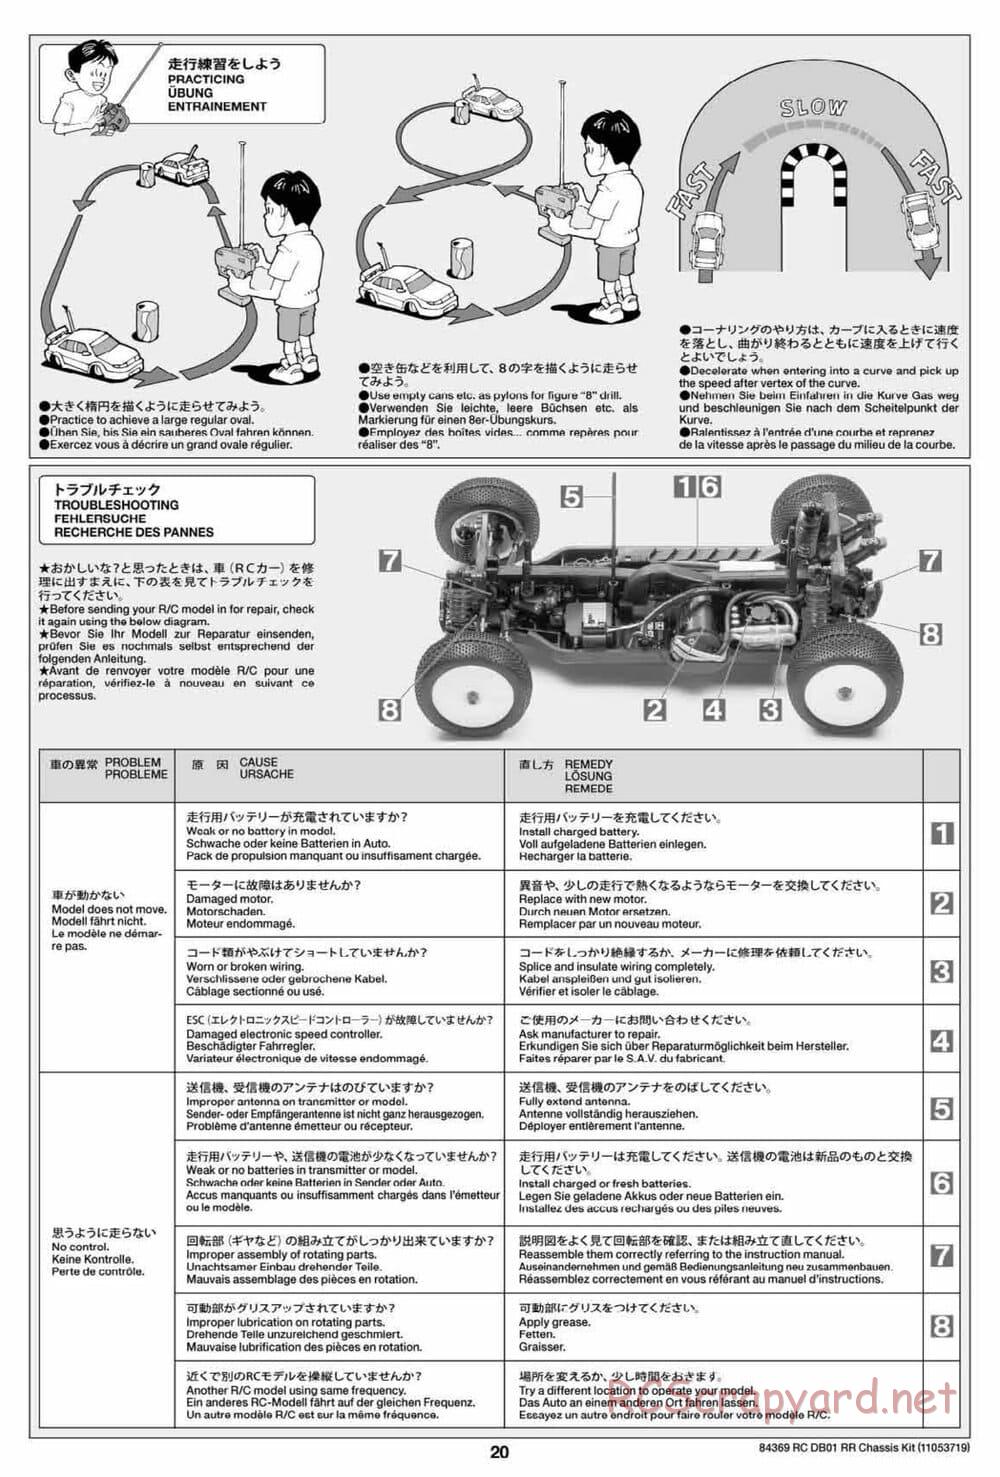 Tamiya - DB-01 RR Chassis - Manual - Page 20